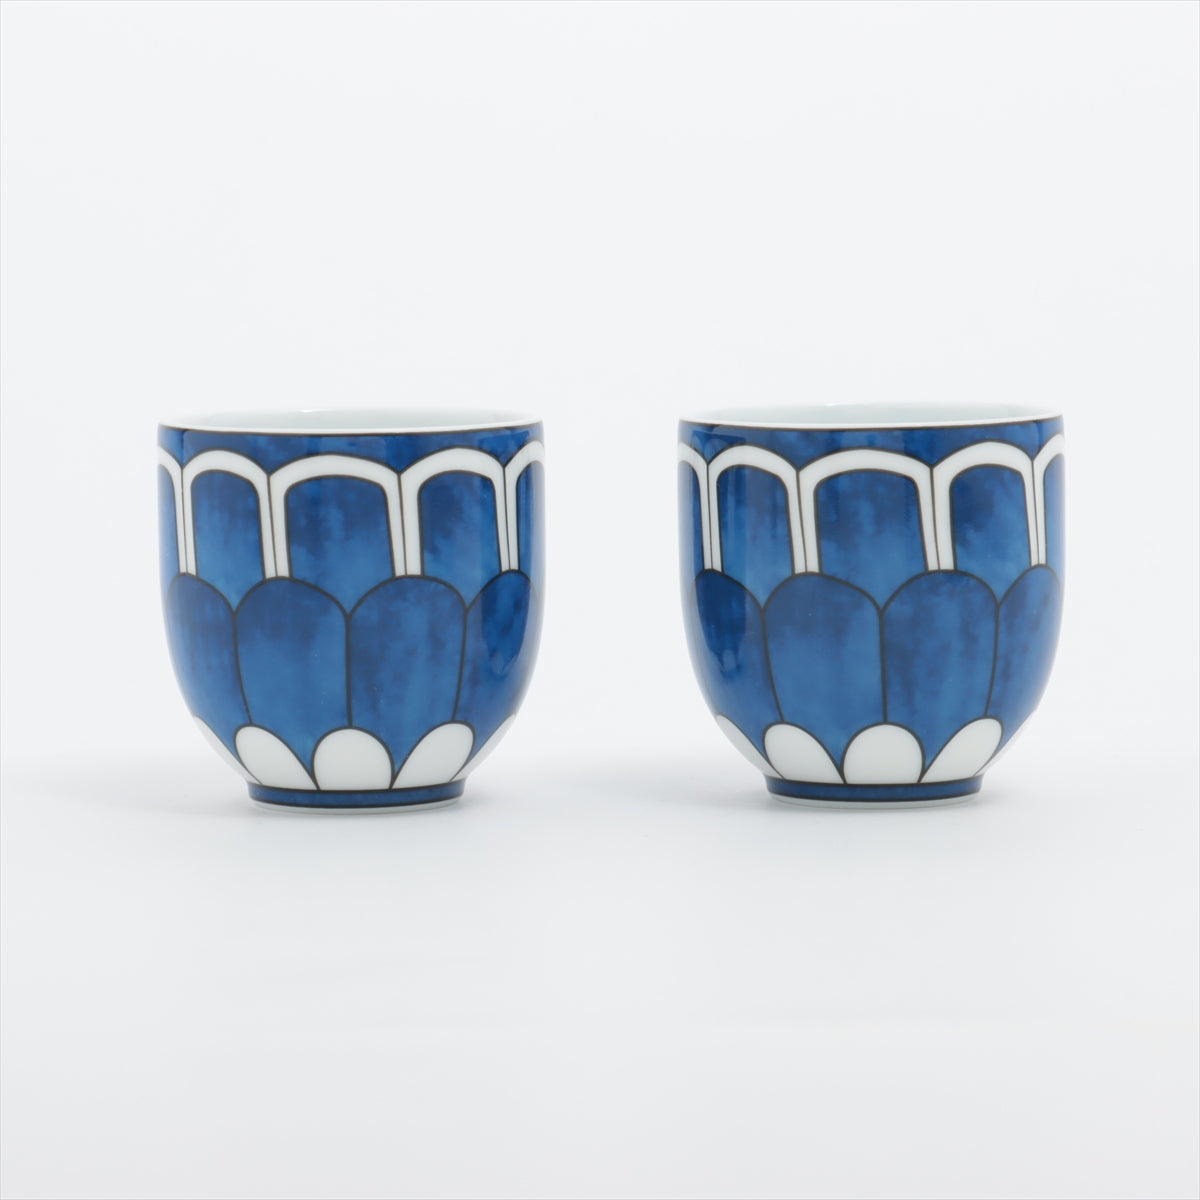 Hermès Bleus d'Ailleurs cup and saucer Ceramic Blue Demitasse